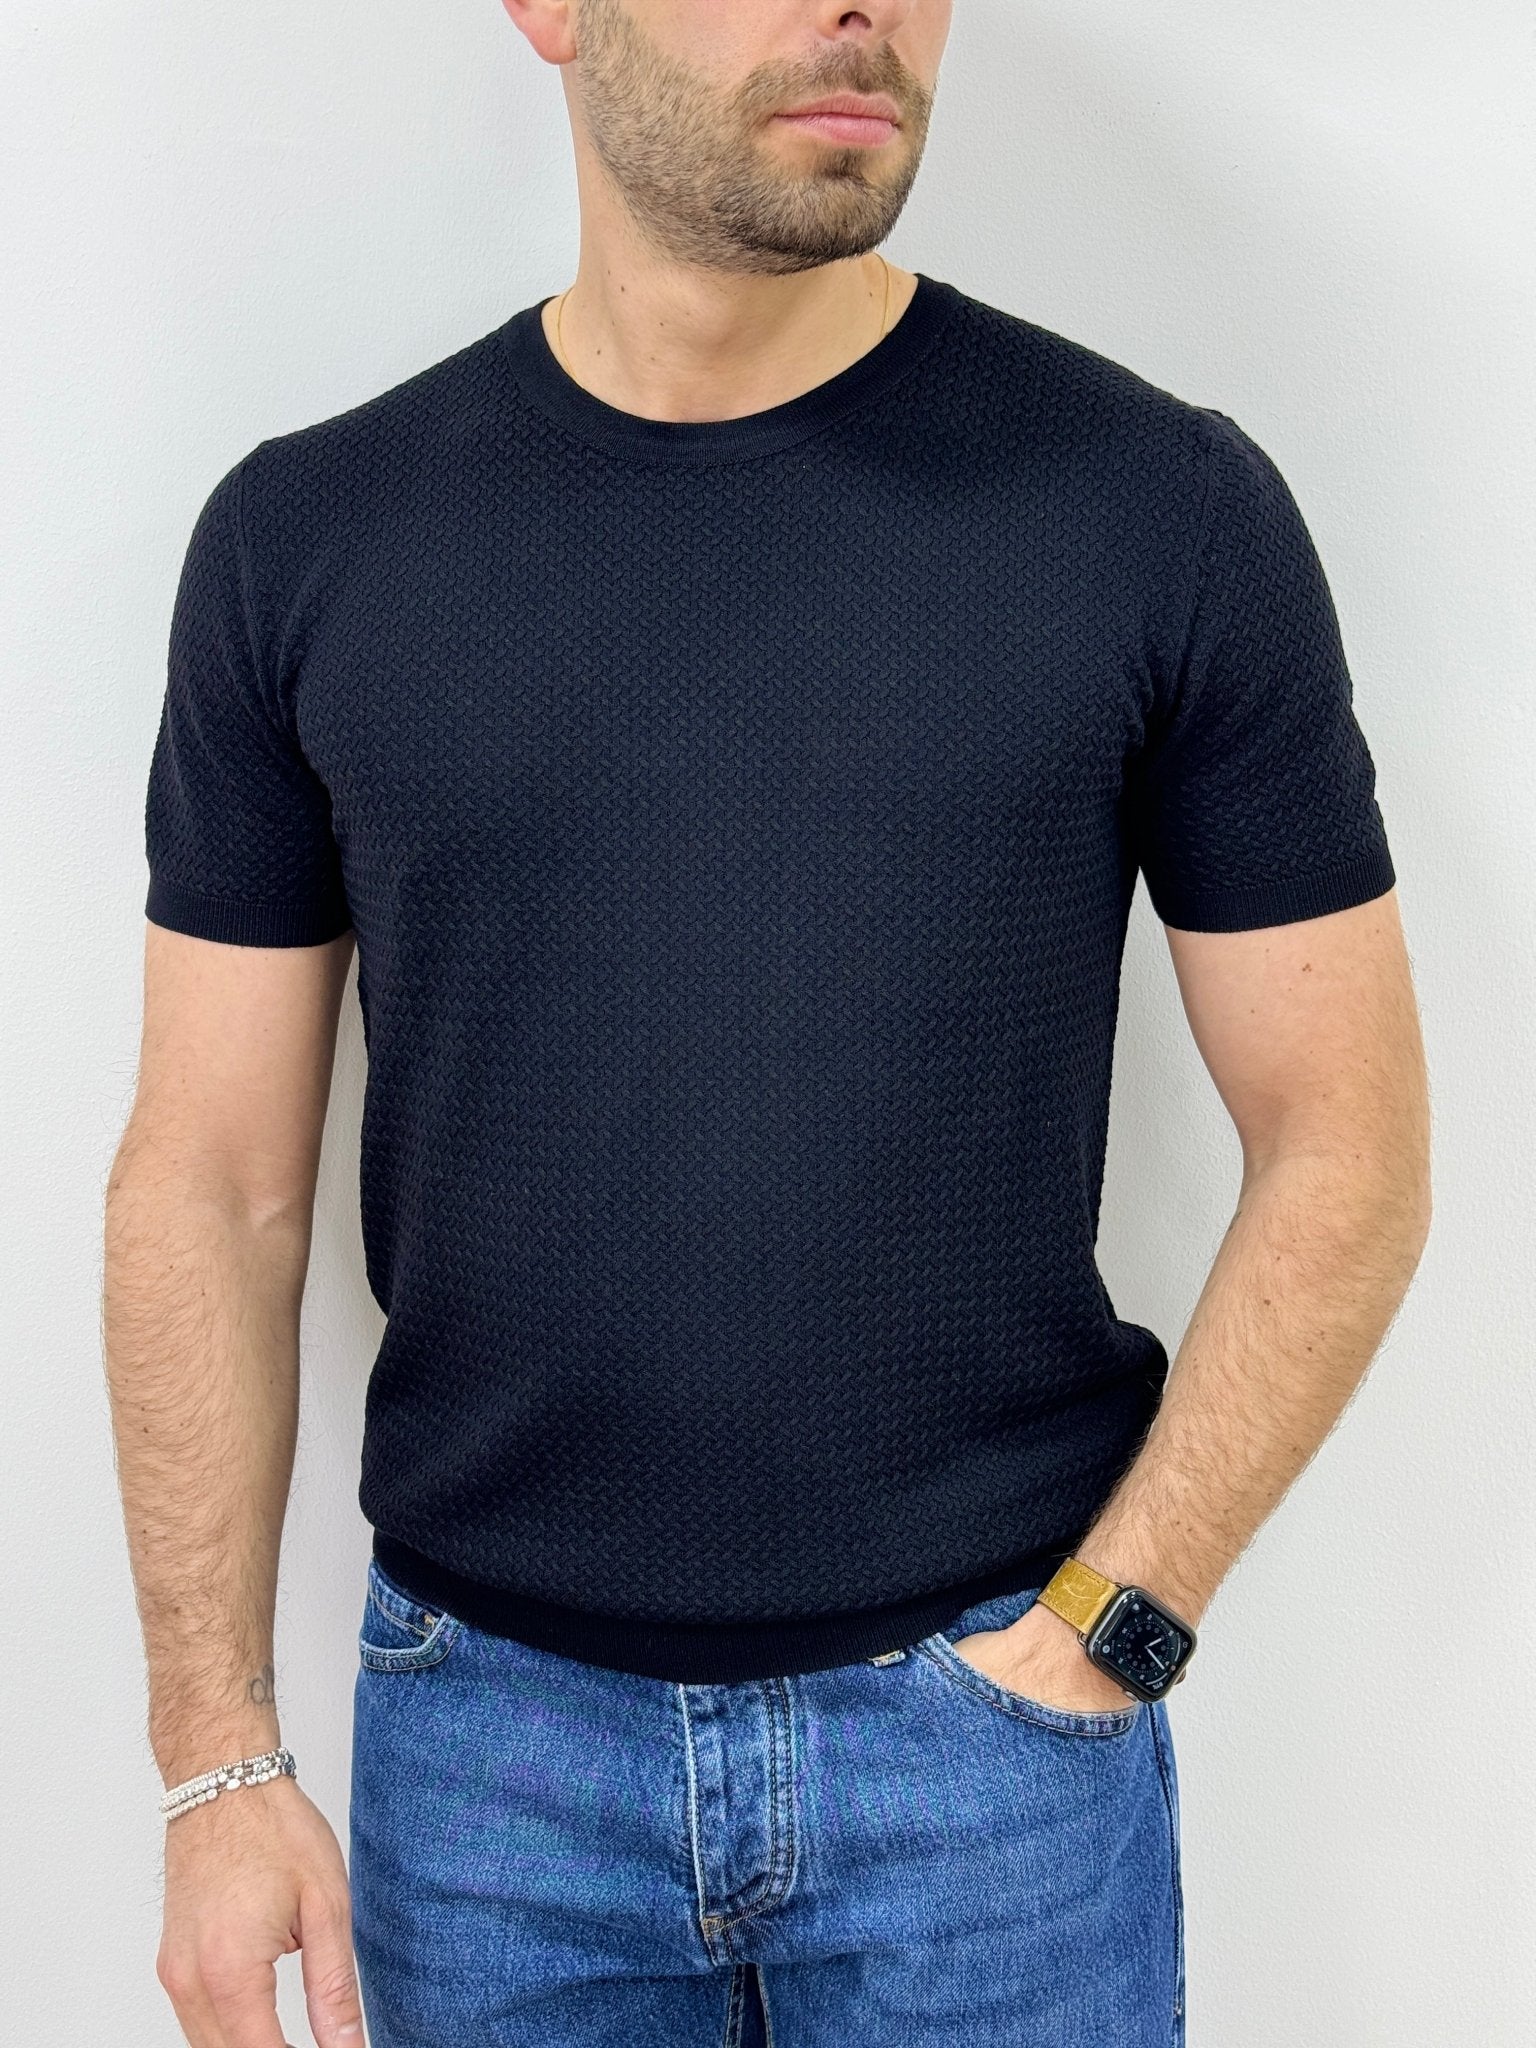 T-Shirt Uomo in Filo Intreccio Nero - SEASON LAB